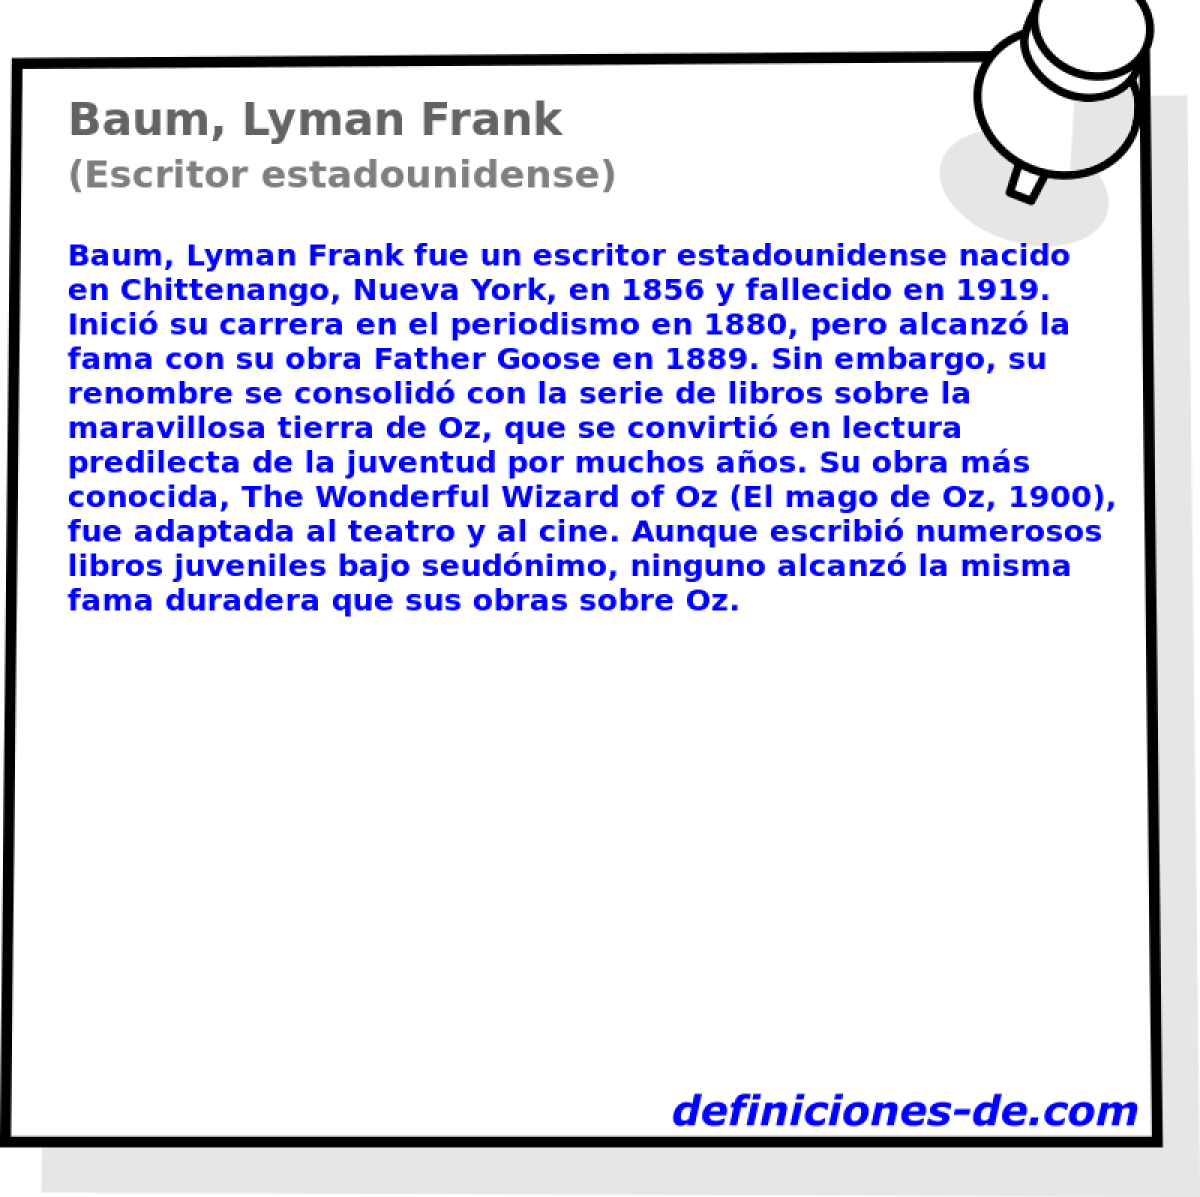 Baum, Lyman Frank (Escritor estadounidense)